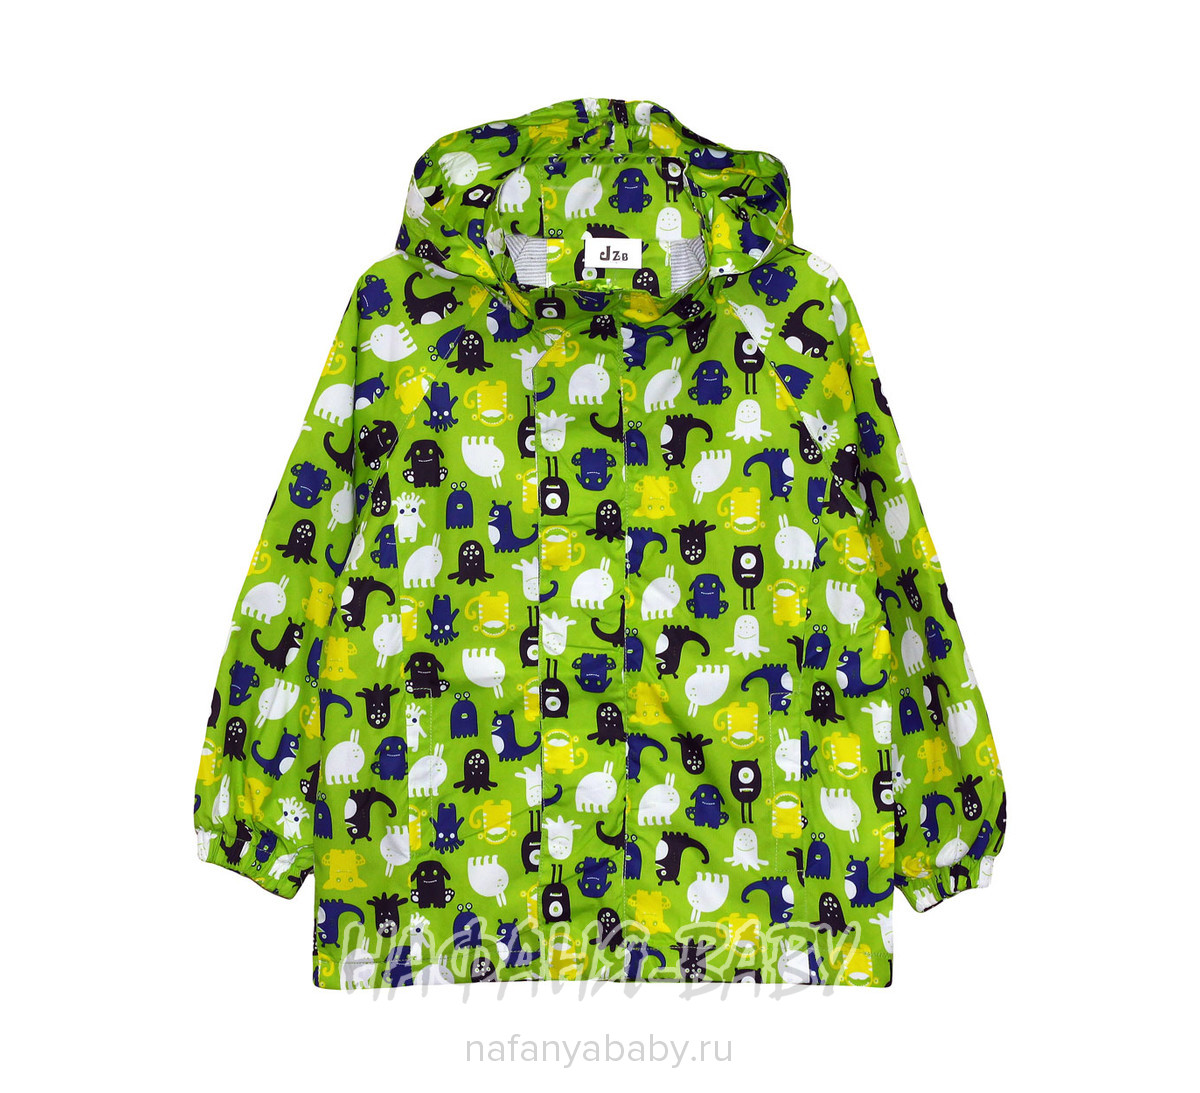 Детская куртка-ветровка JZB арт: 90608, 1-4 года, 5-9 лет, цвет зеленый, оптом Китай (Пекин)